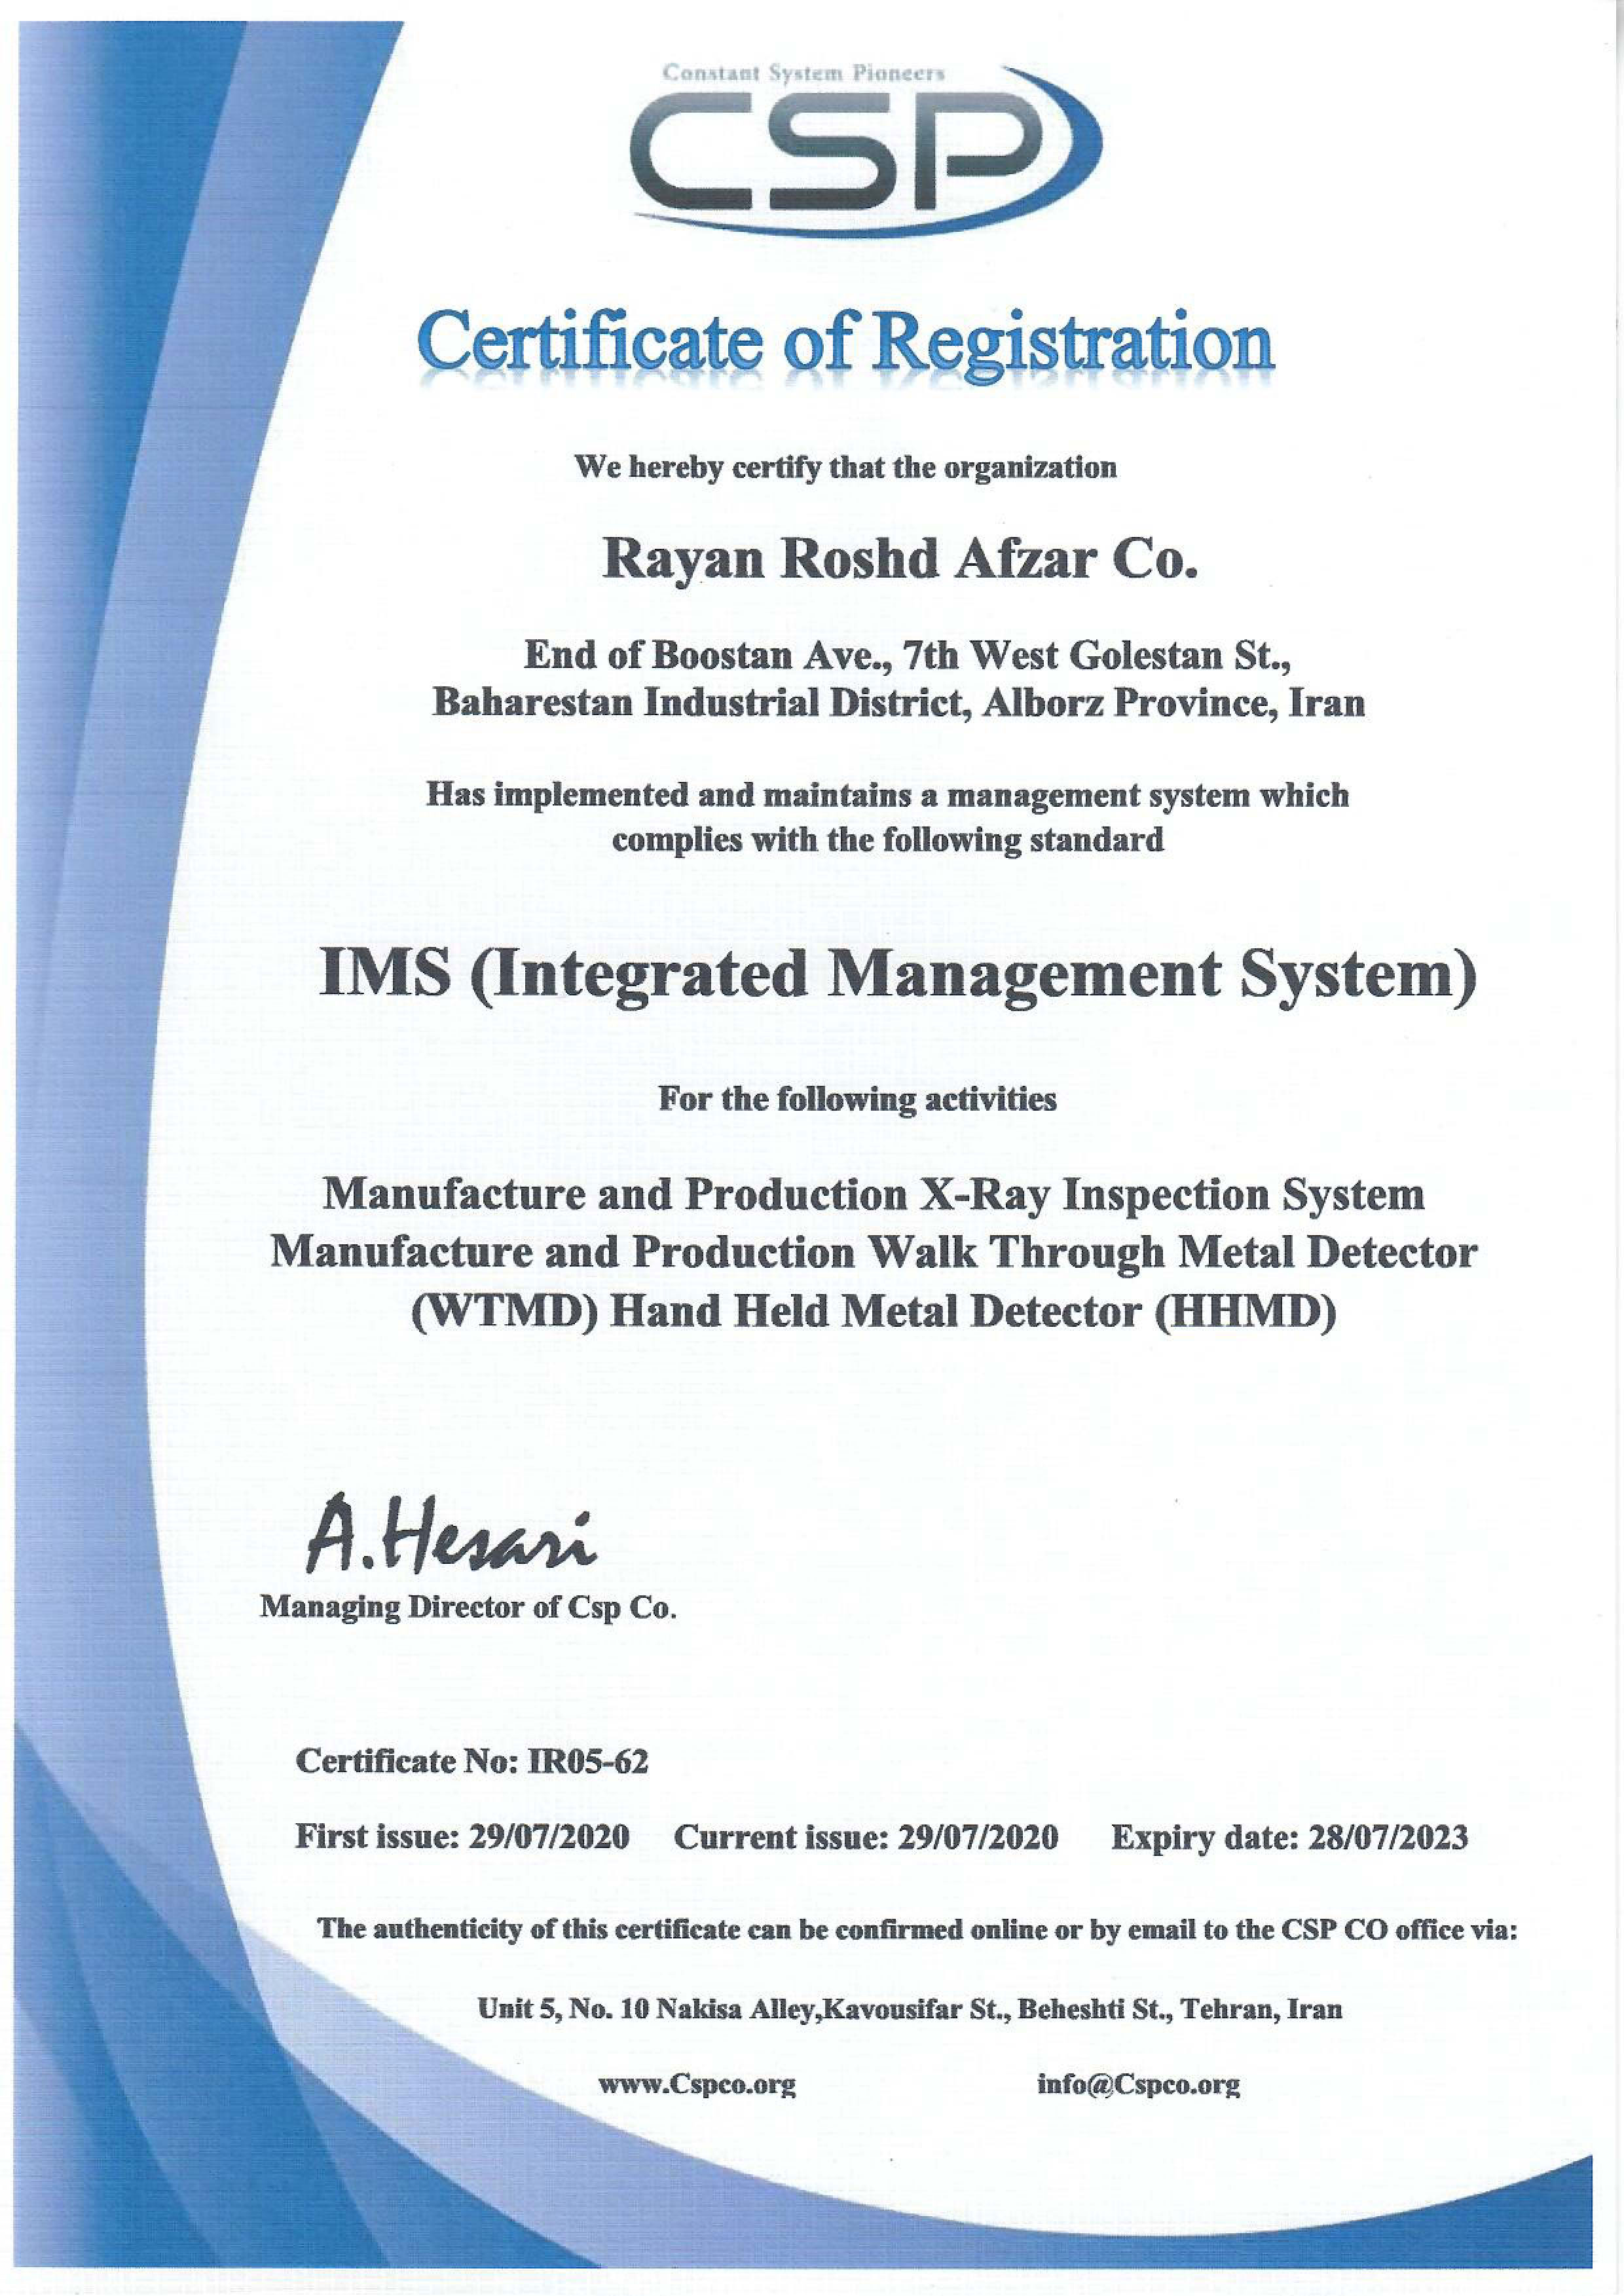 گواهینامه IMS، سیستم مدیریت یکپارچه (Integrated Management System) ایکس ری های بازرسی